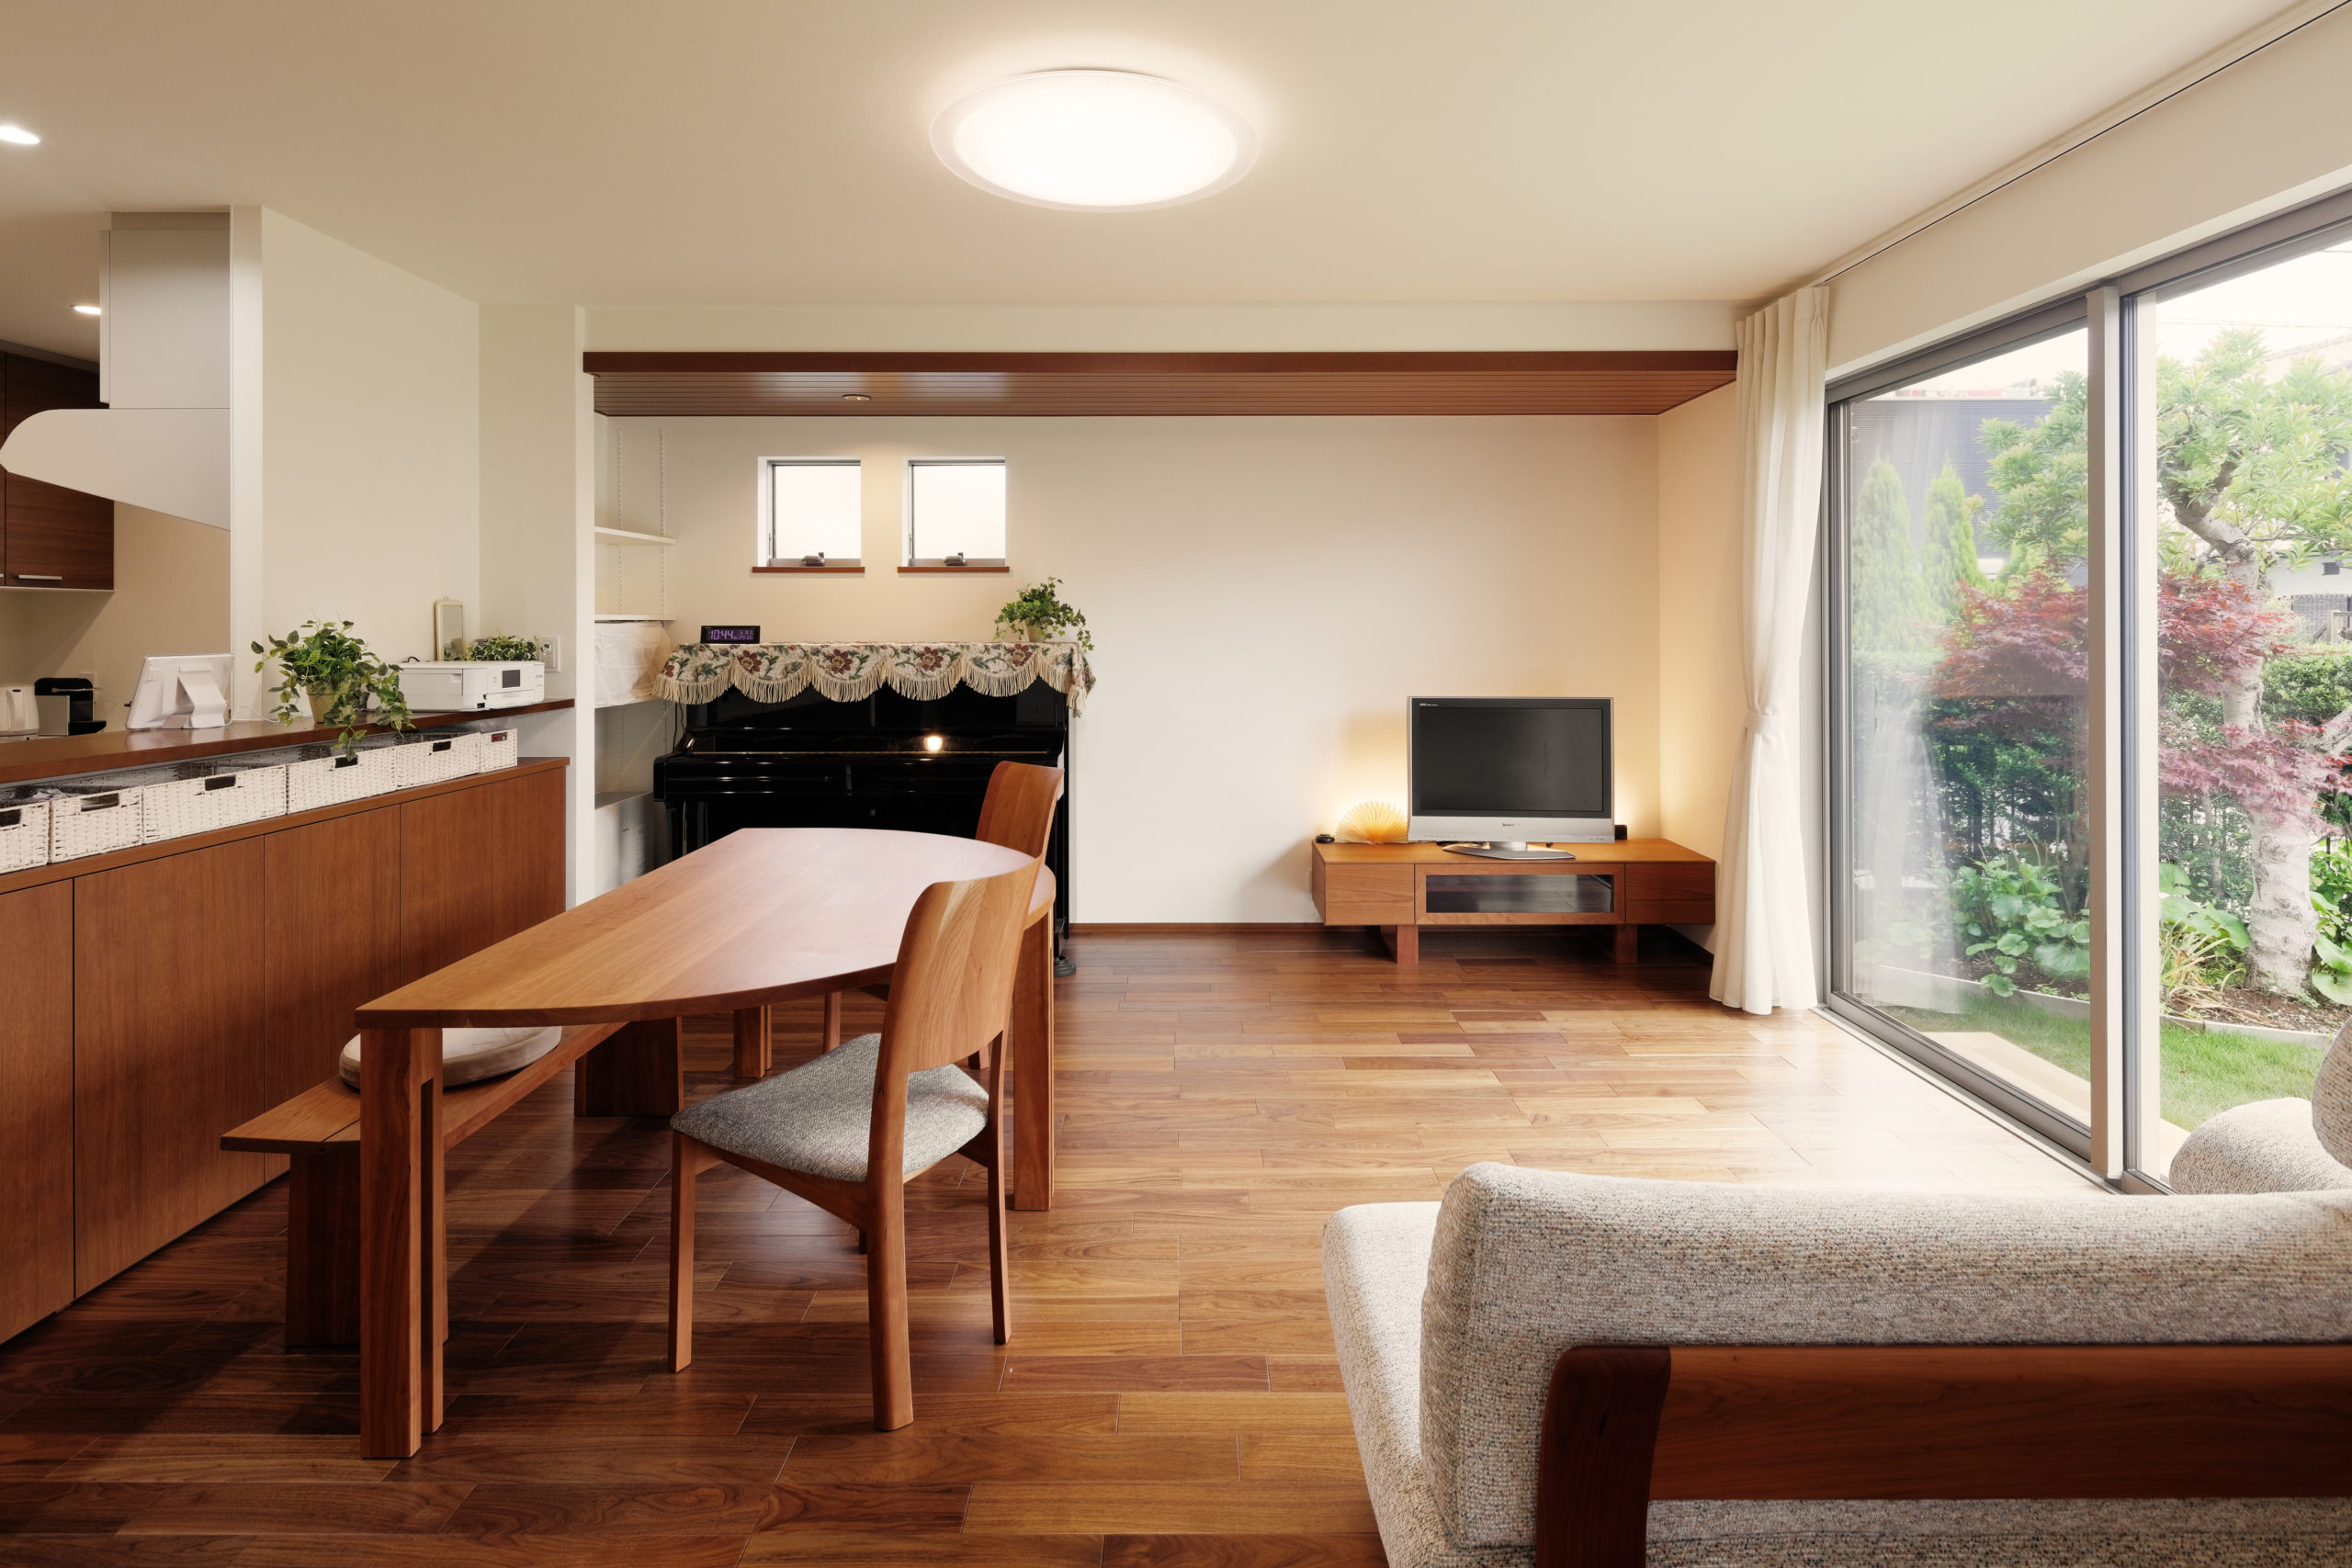 木張りの天井下げやキッチンの雰囲気に合わせて家具も選定しトータルコディネートとしています